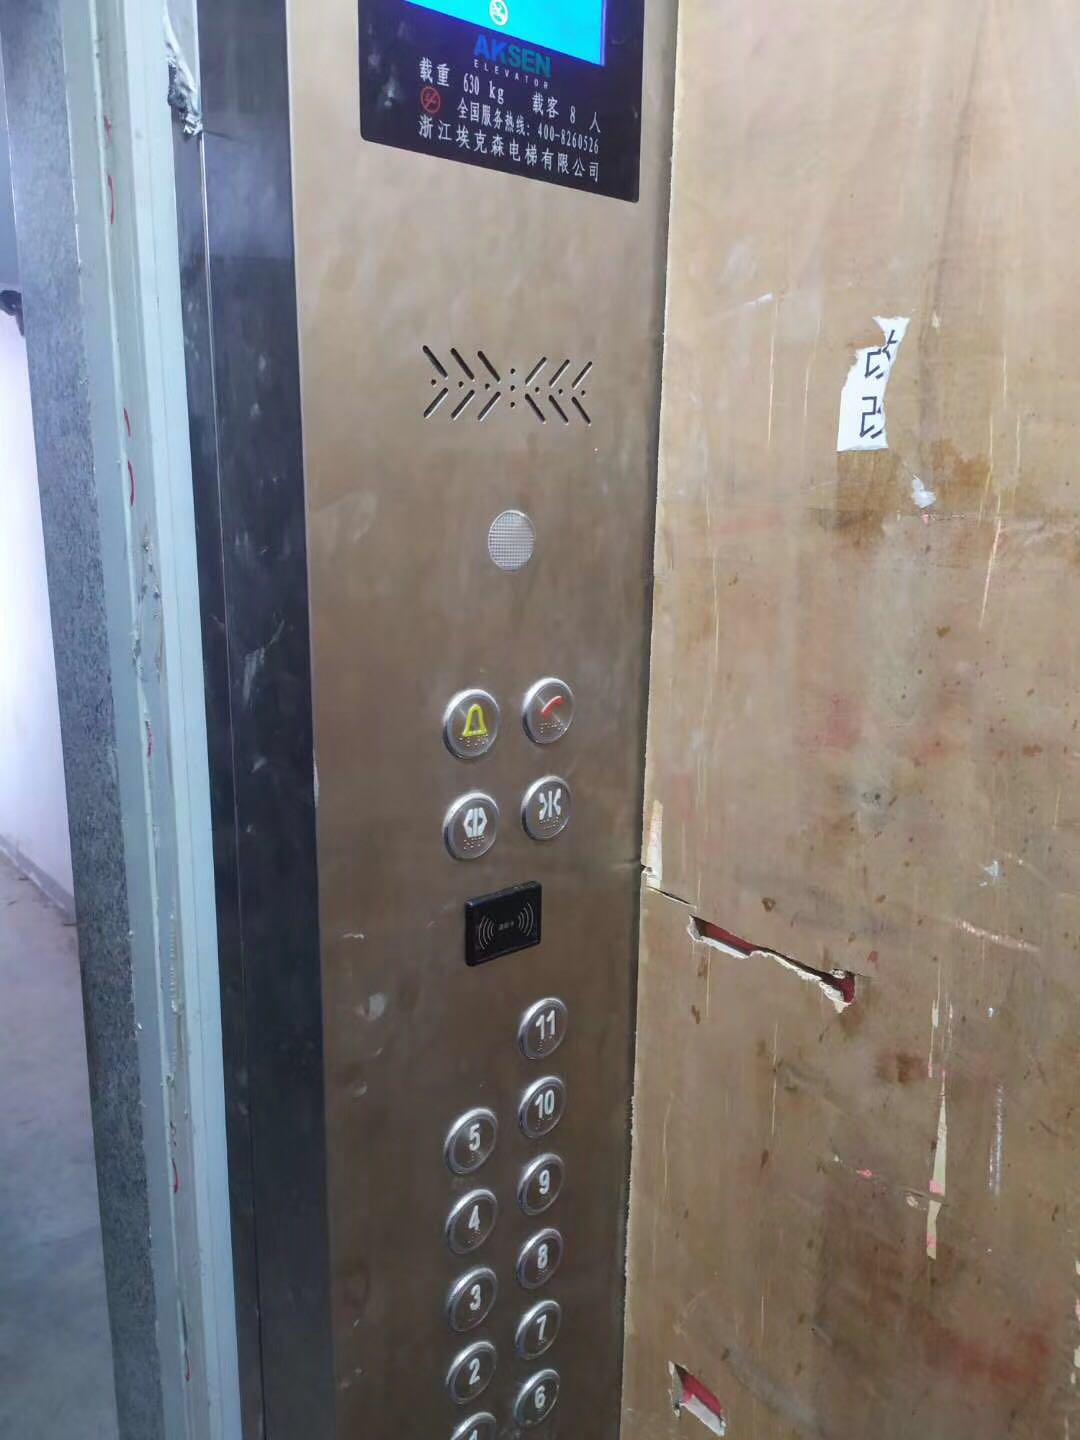 电梯ic卡,电梯控制系统,电梯刷卡系统